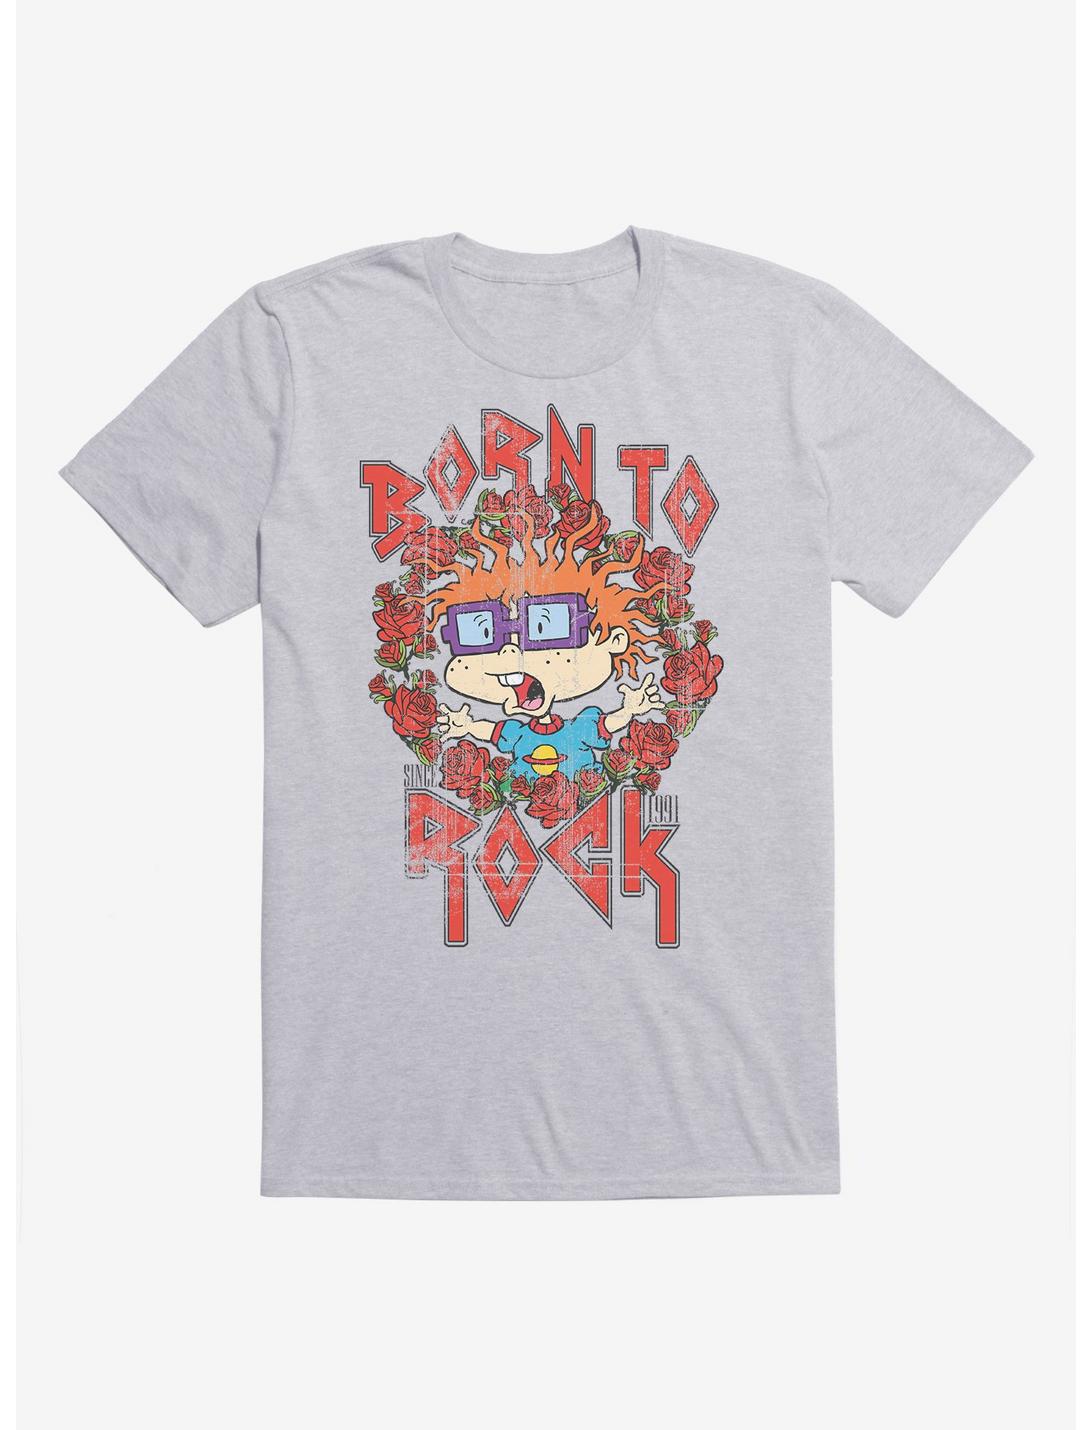 Rugrats Chuckie Born To Rock T-Shirt, , hi-res